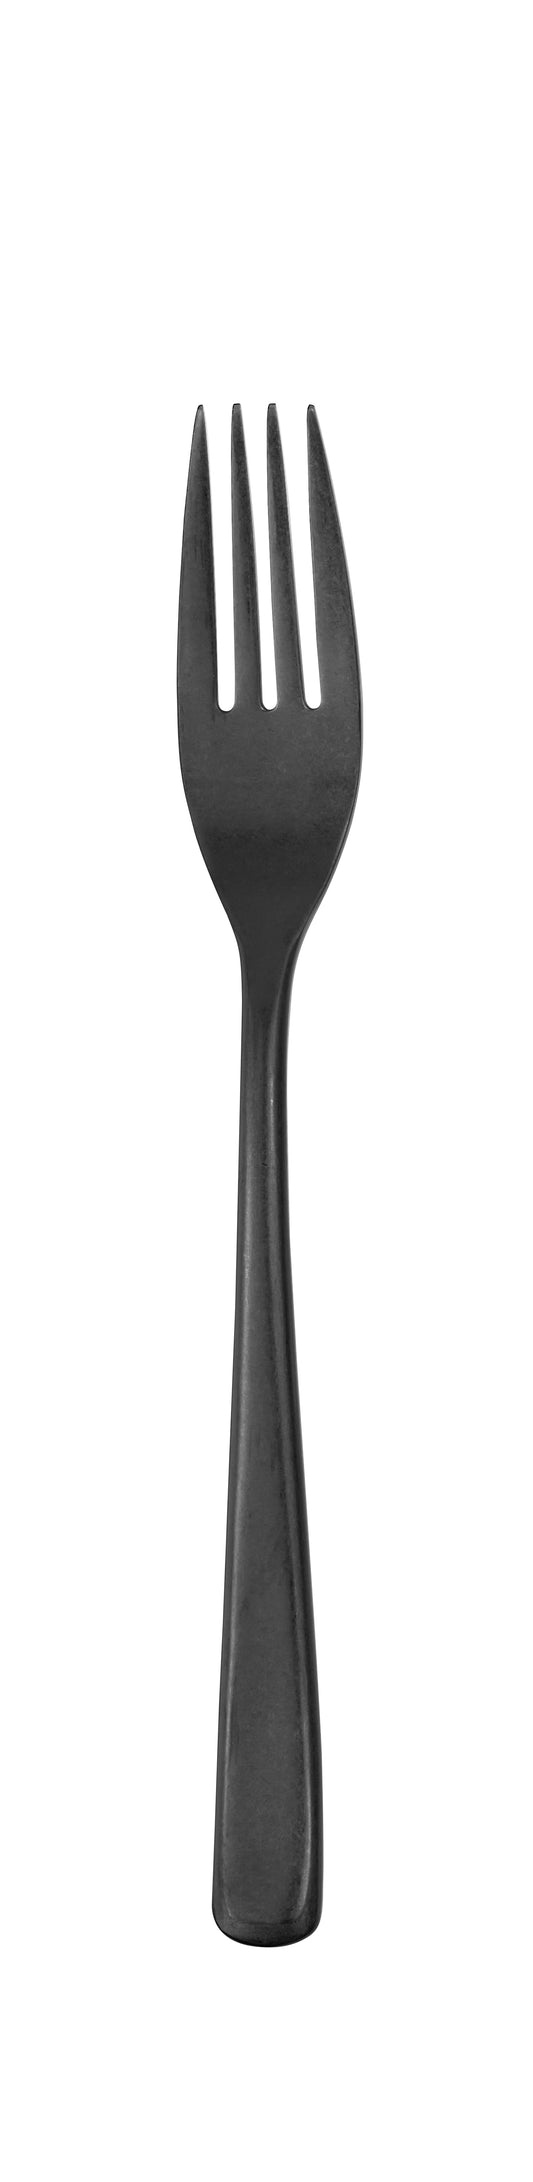 Table fork MIDAN PVD gun metal stonewashed 212 mm